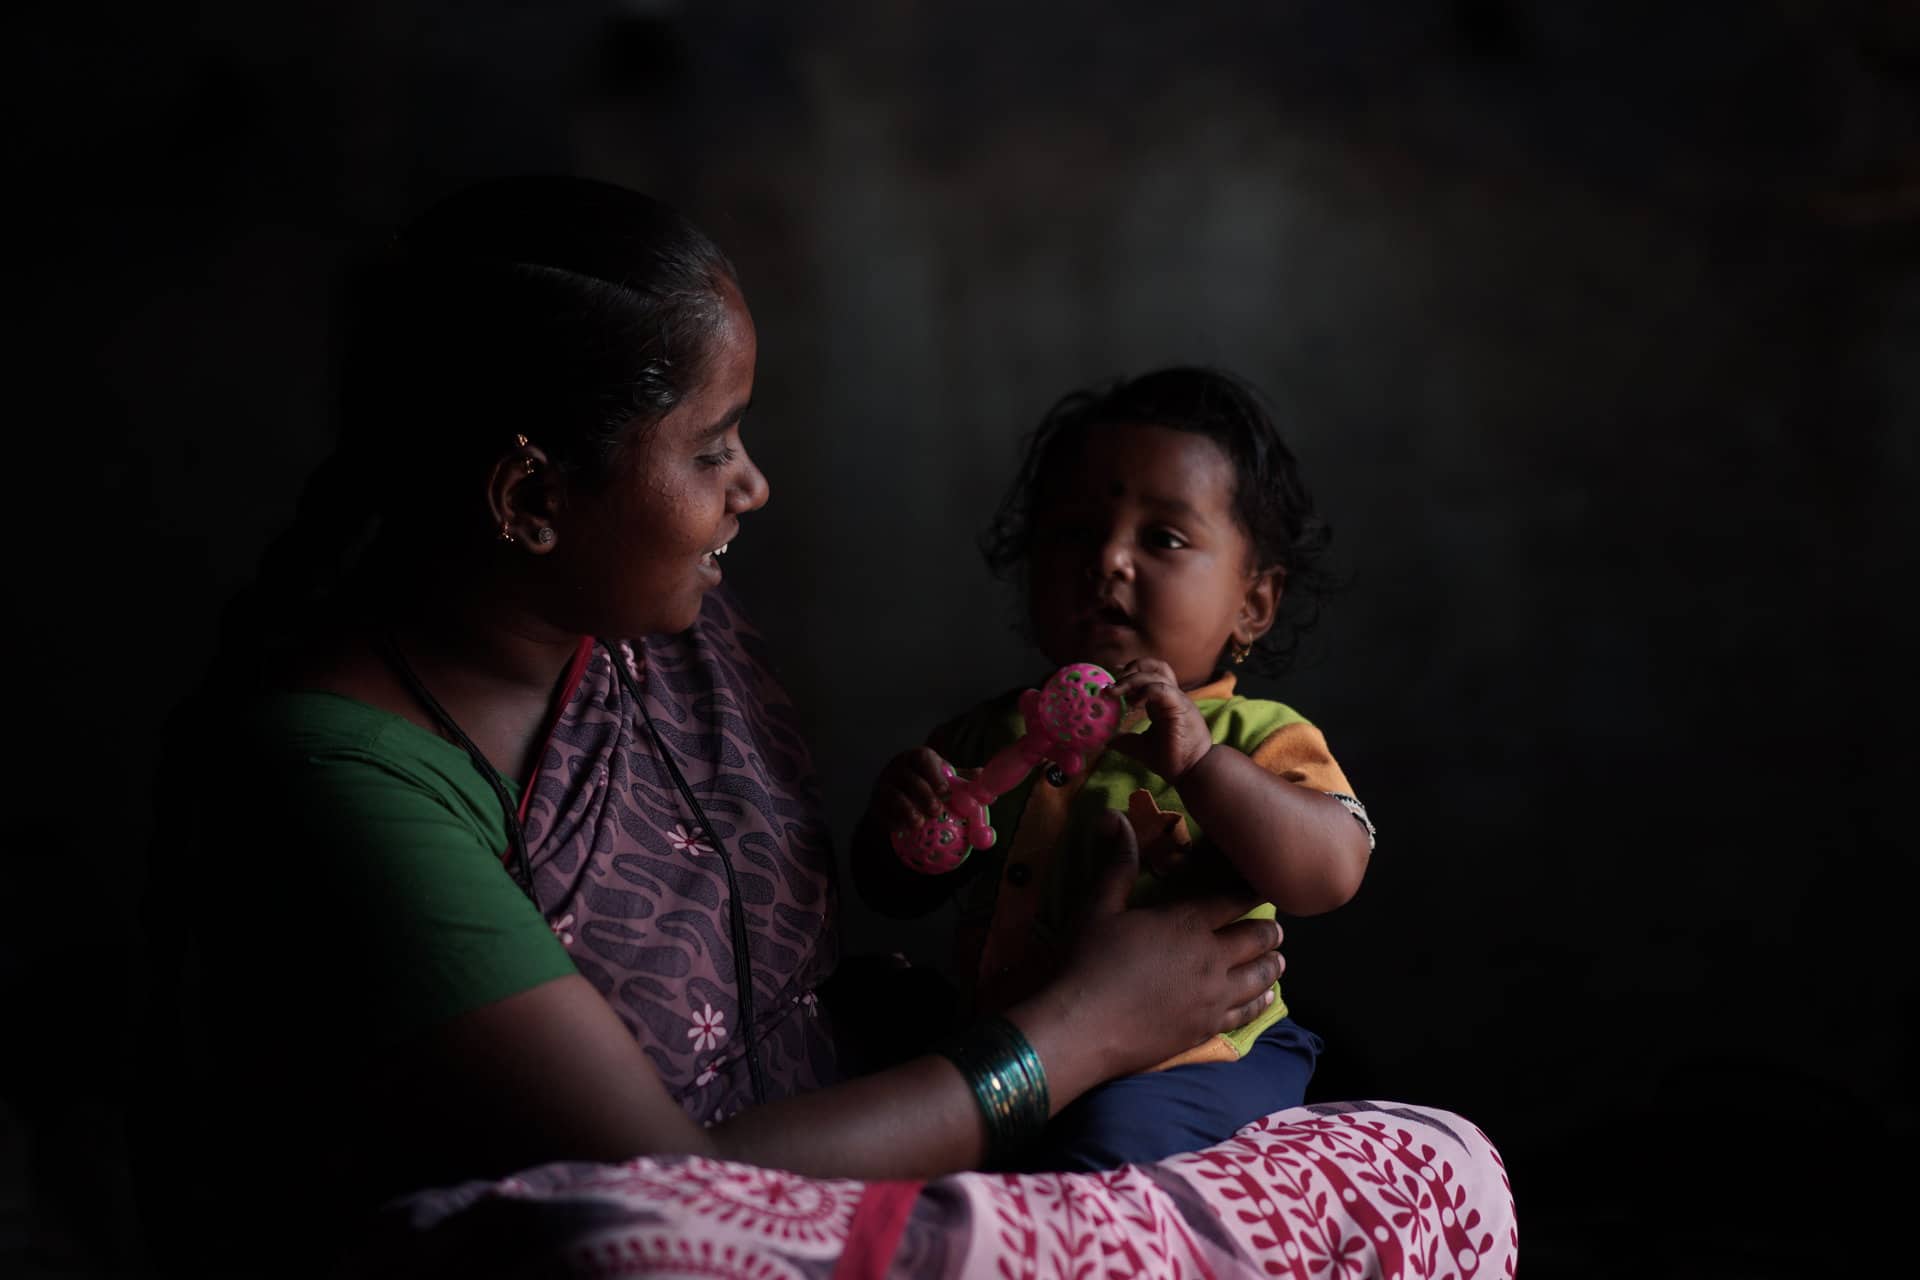 Une mère et son enfant, bénéficiaires des projets d’Action Education dans le cadre de la migration interne en Inde. Inde, Mars 2022. © Chandra Kiran